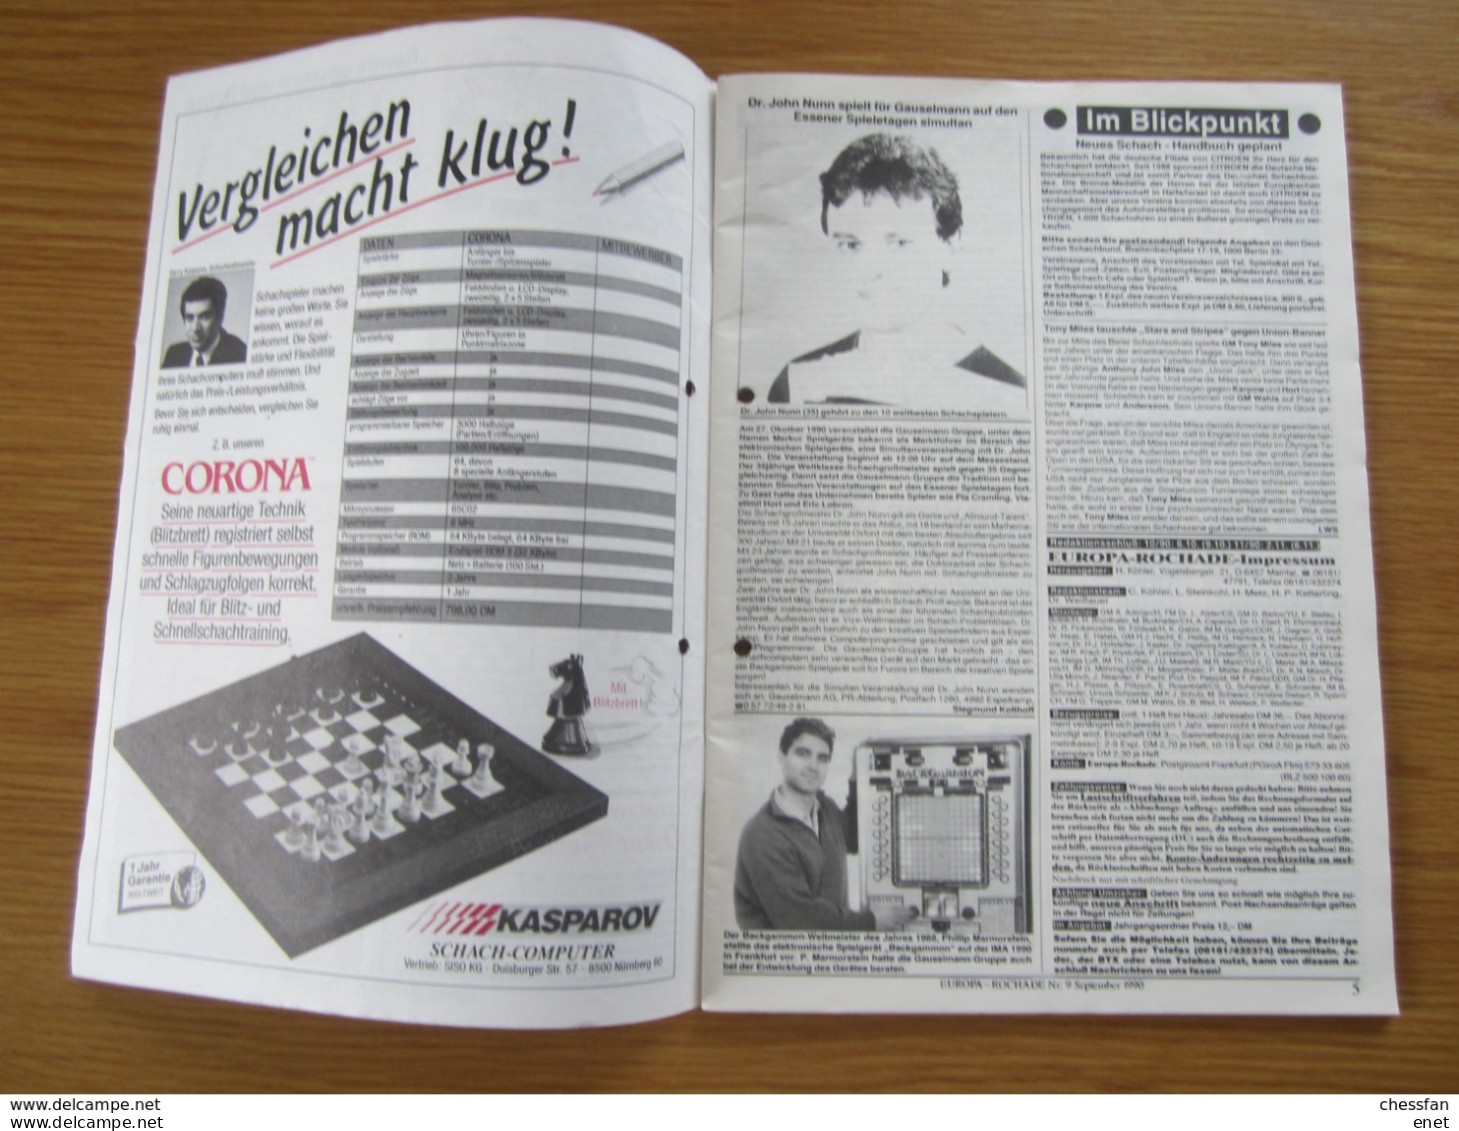 Schach Chess Ajedrez échecs - Europa-Rochade -Nr 9 / 1990 - Sport